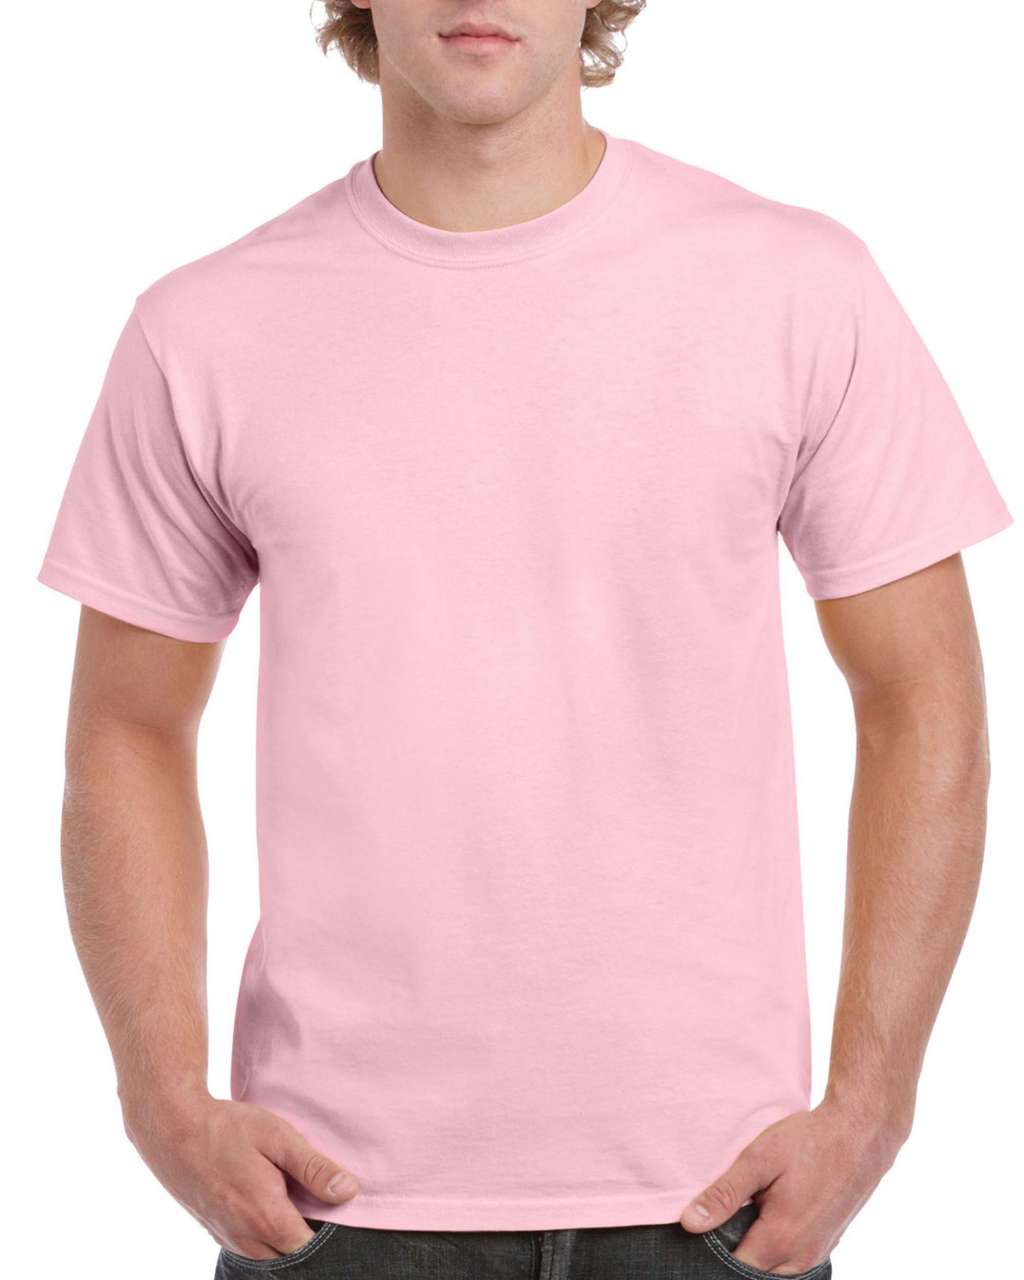 Gildan Hammer Adult T-shirt - Gildan Hammer Adult T-shirt - Light Pink